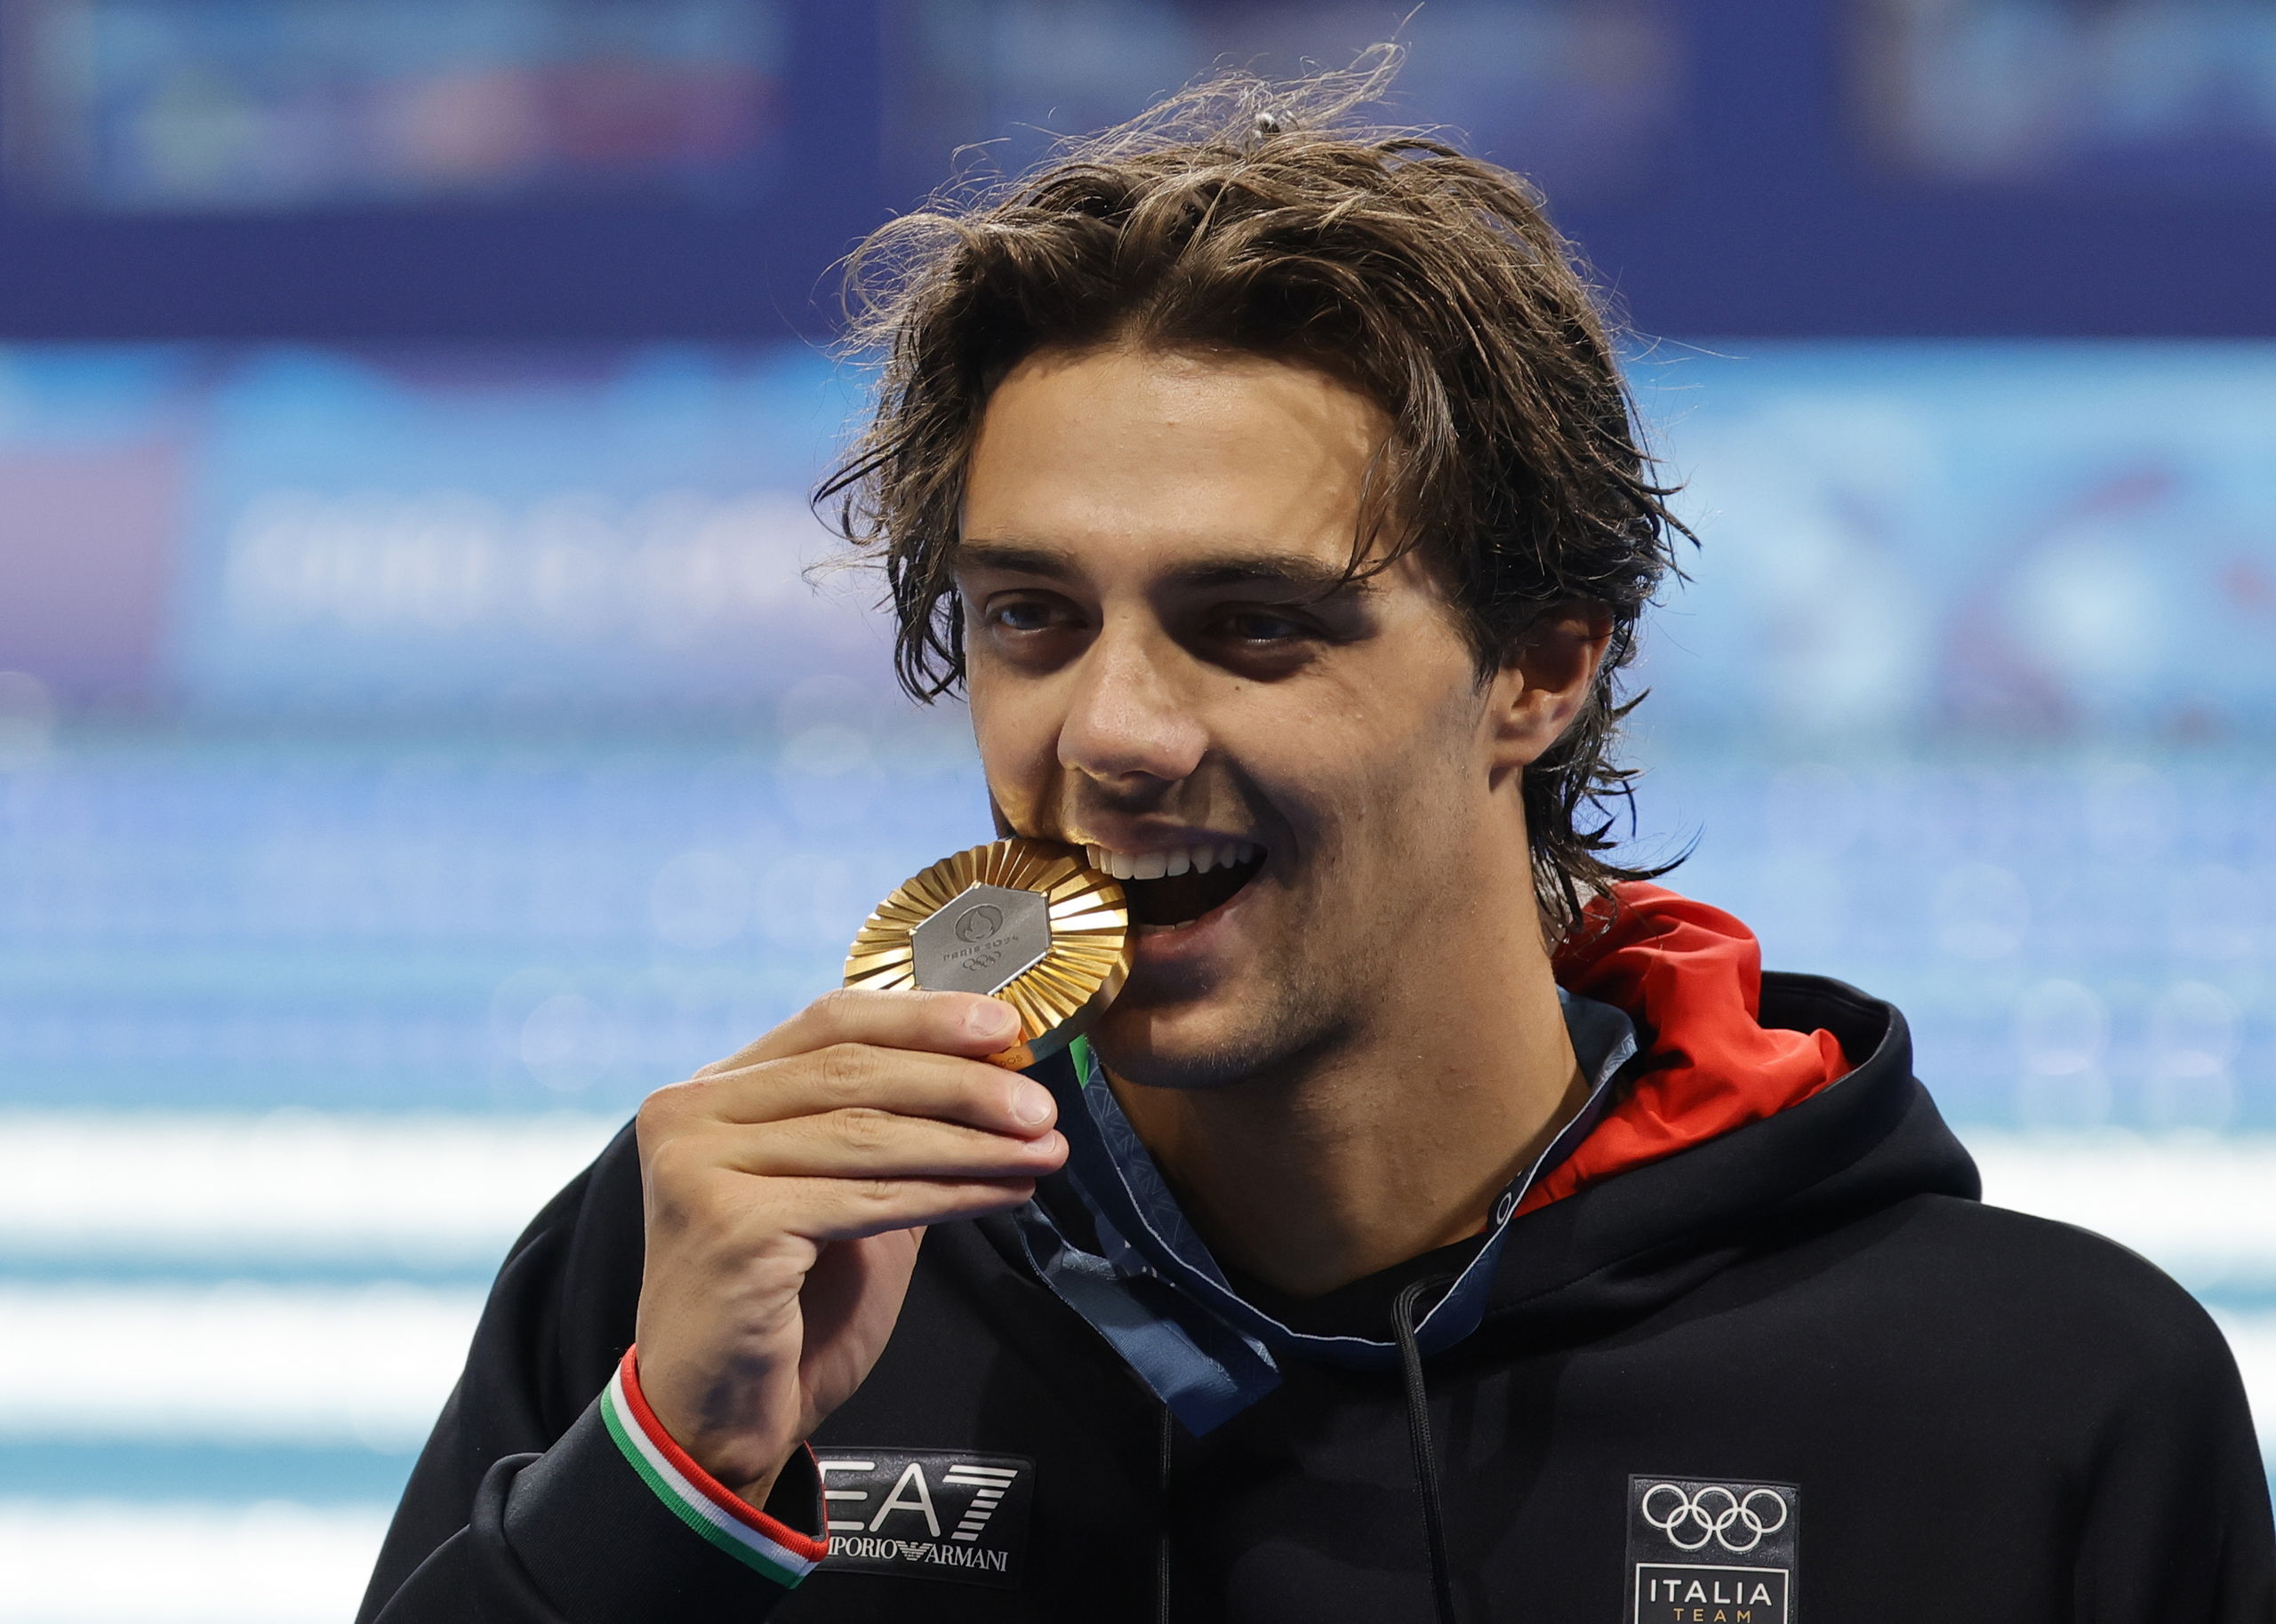 Thomas Ceccon, el medallista olímpico italiano que causa furor en las redes sociales